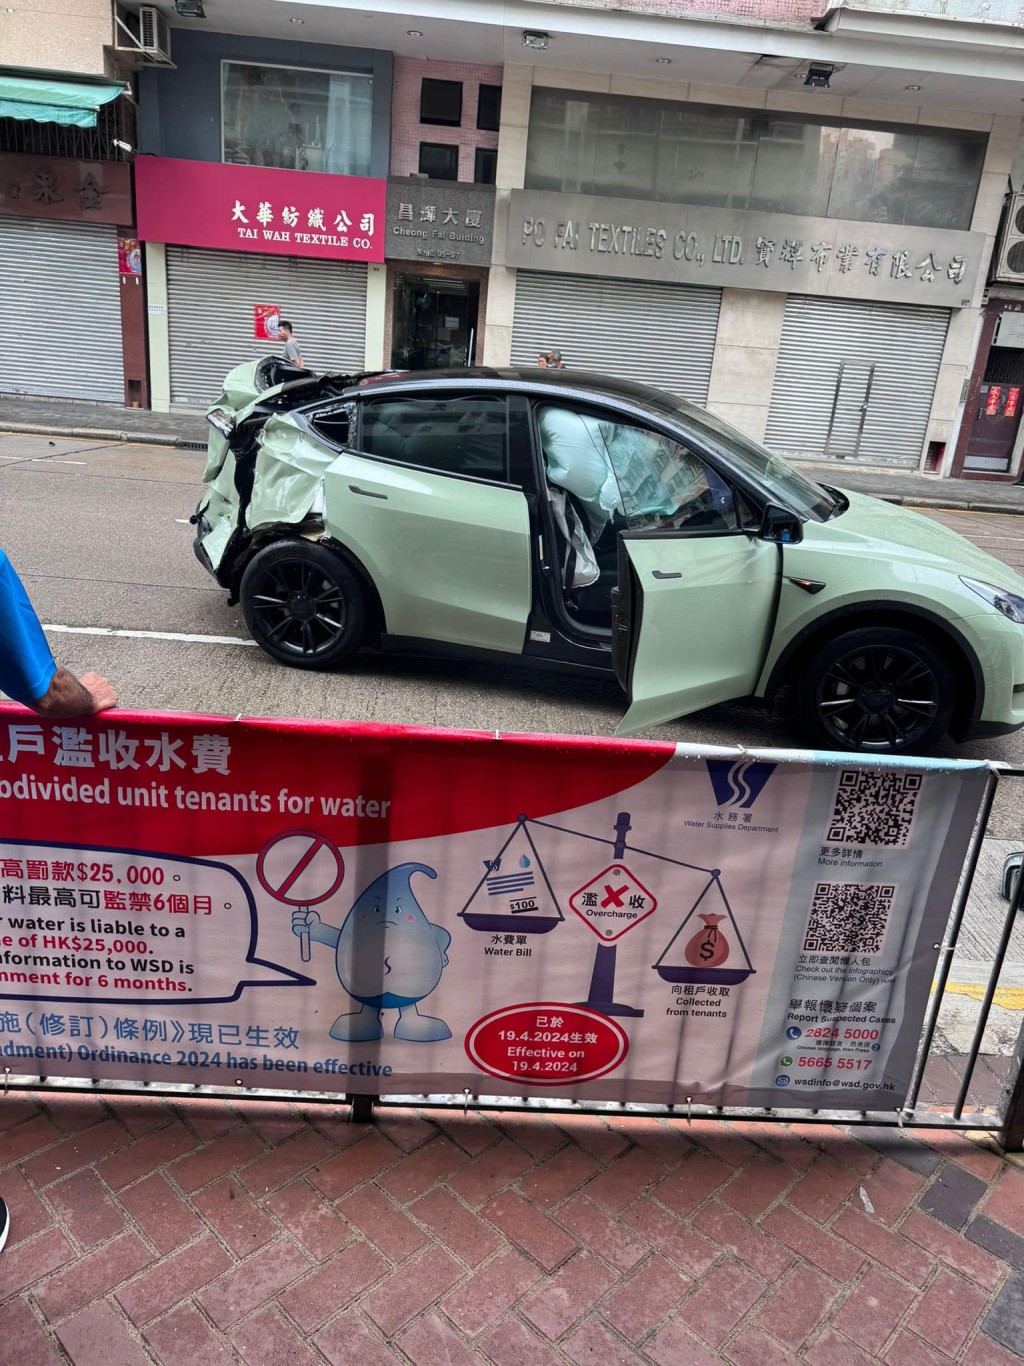 綠色Tesla安全氣袋亦彈出。